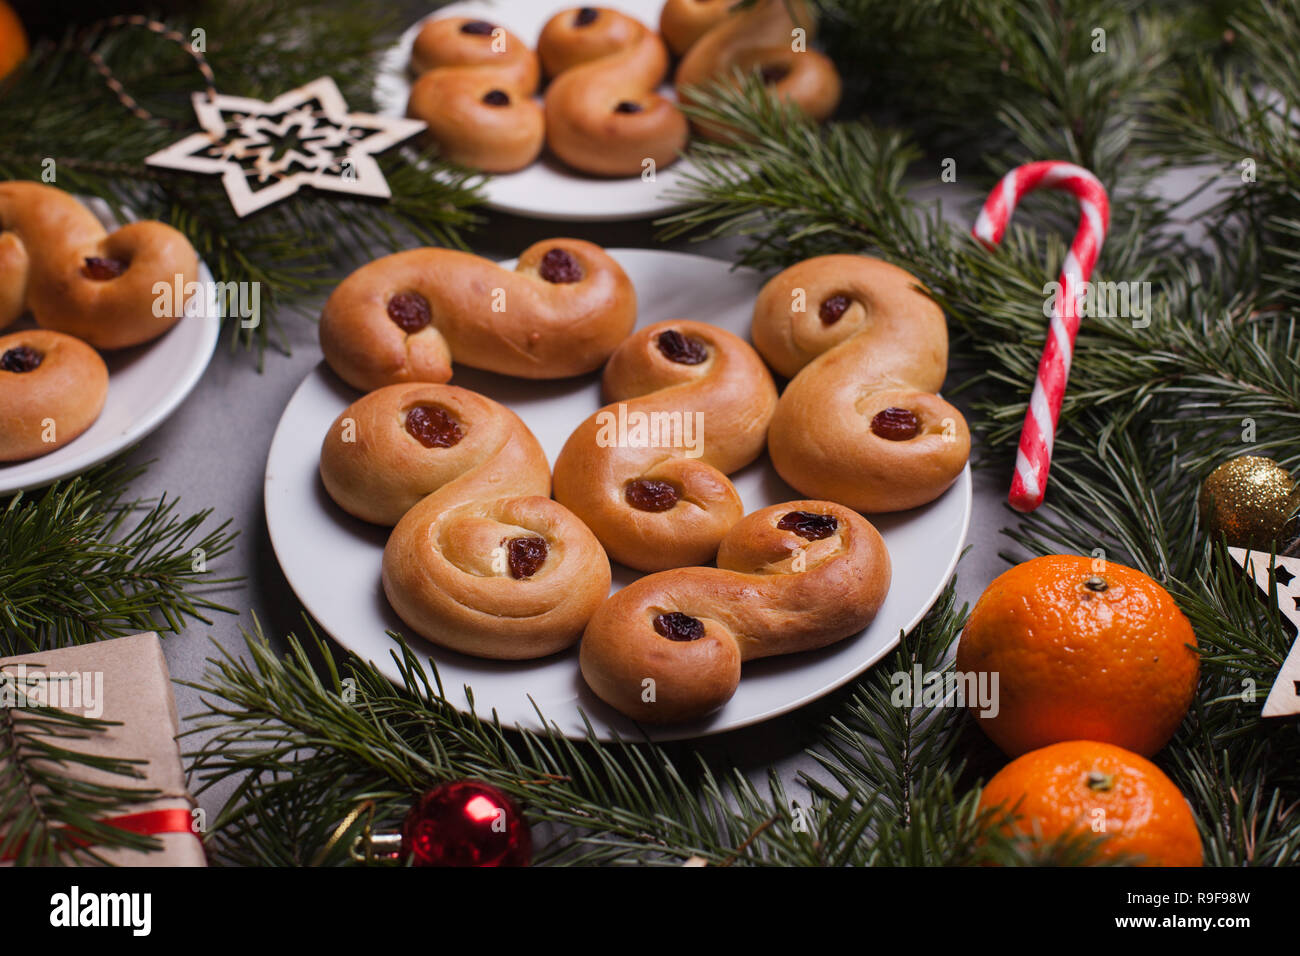 Noël suédois traditionnel (petits pains au safran ou lussebulle lussekatt). Noël suédois. Fond sombre, décoration de Noël Banque D'Images